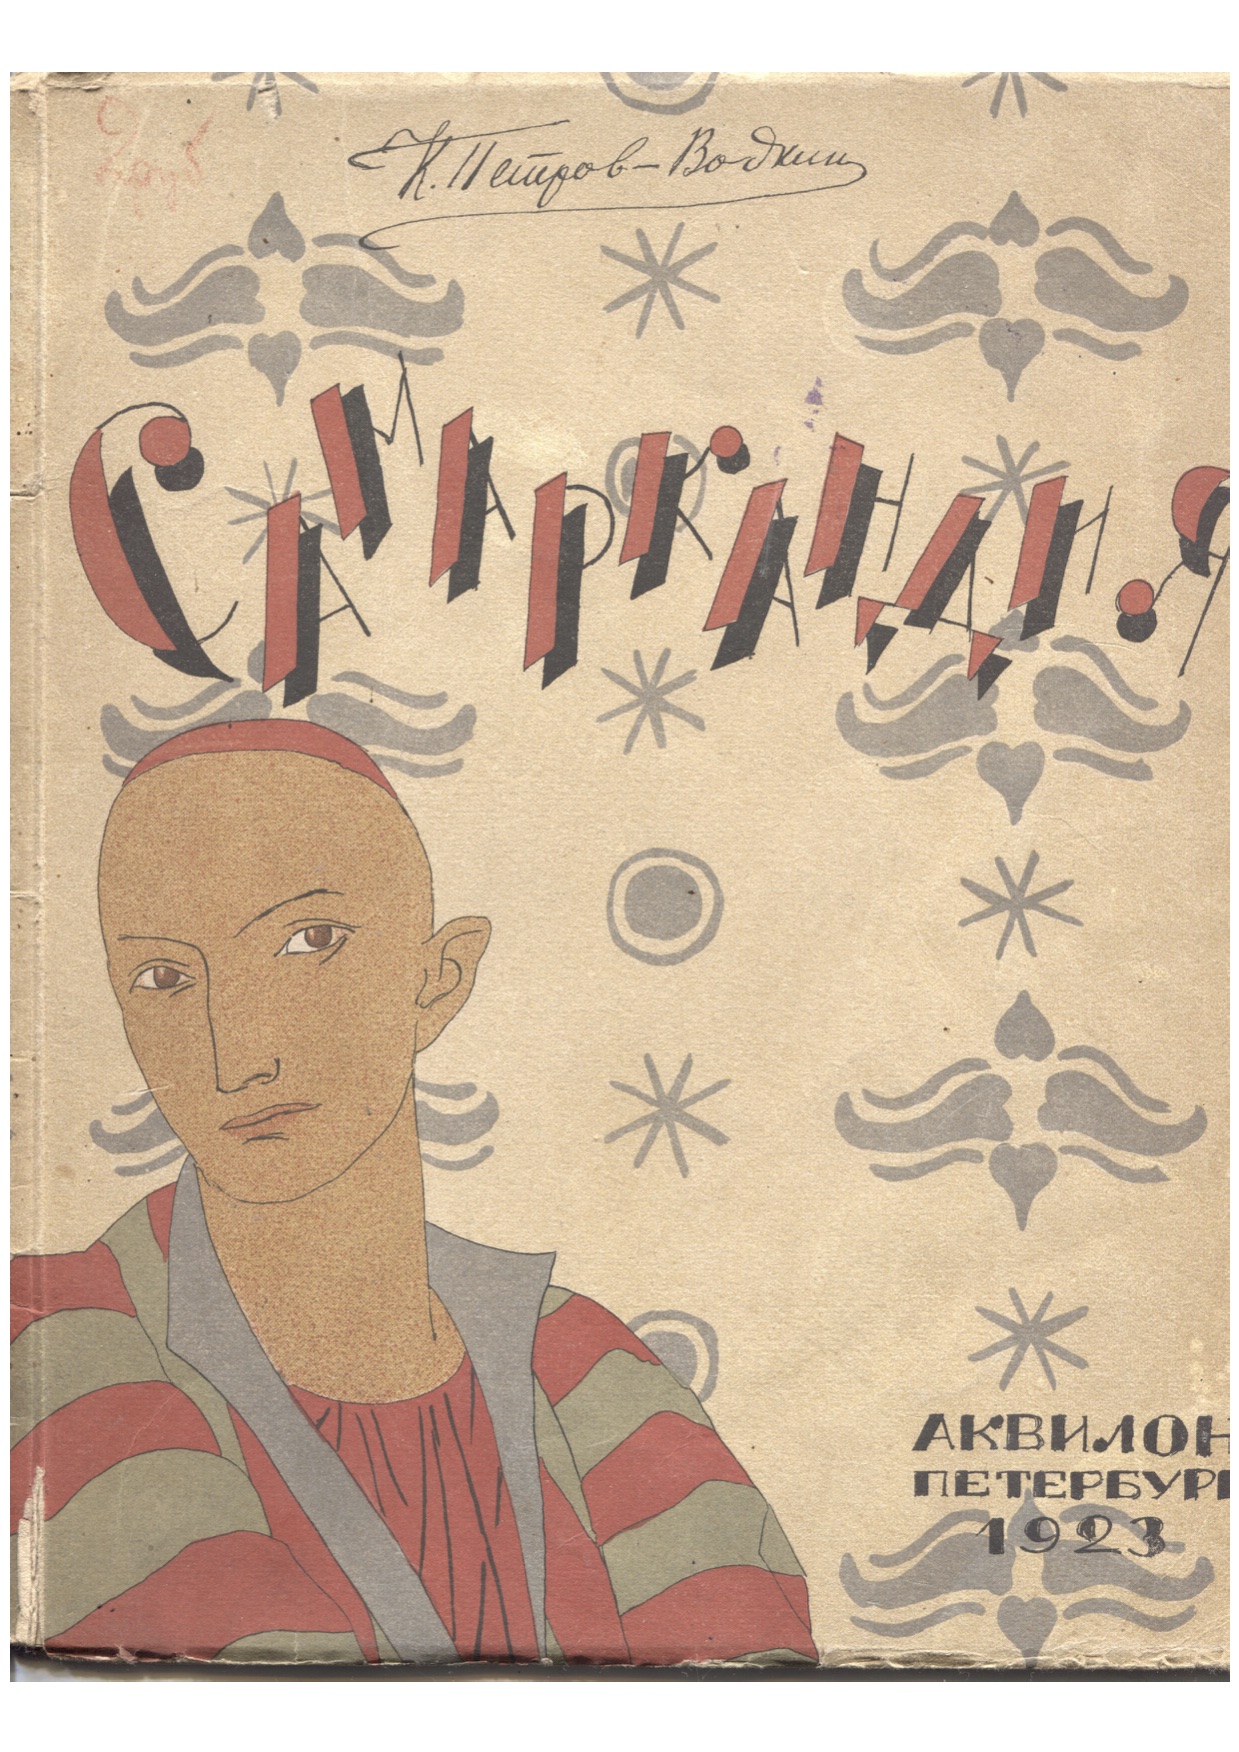 Самаркандия, К. Петров-Водкин. издательство Аквилон 1923 год